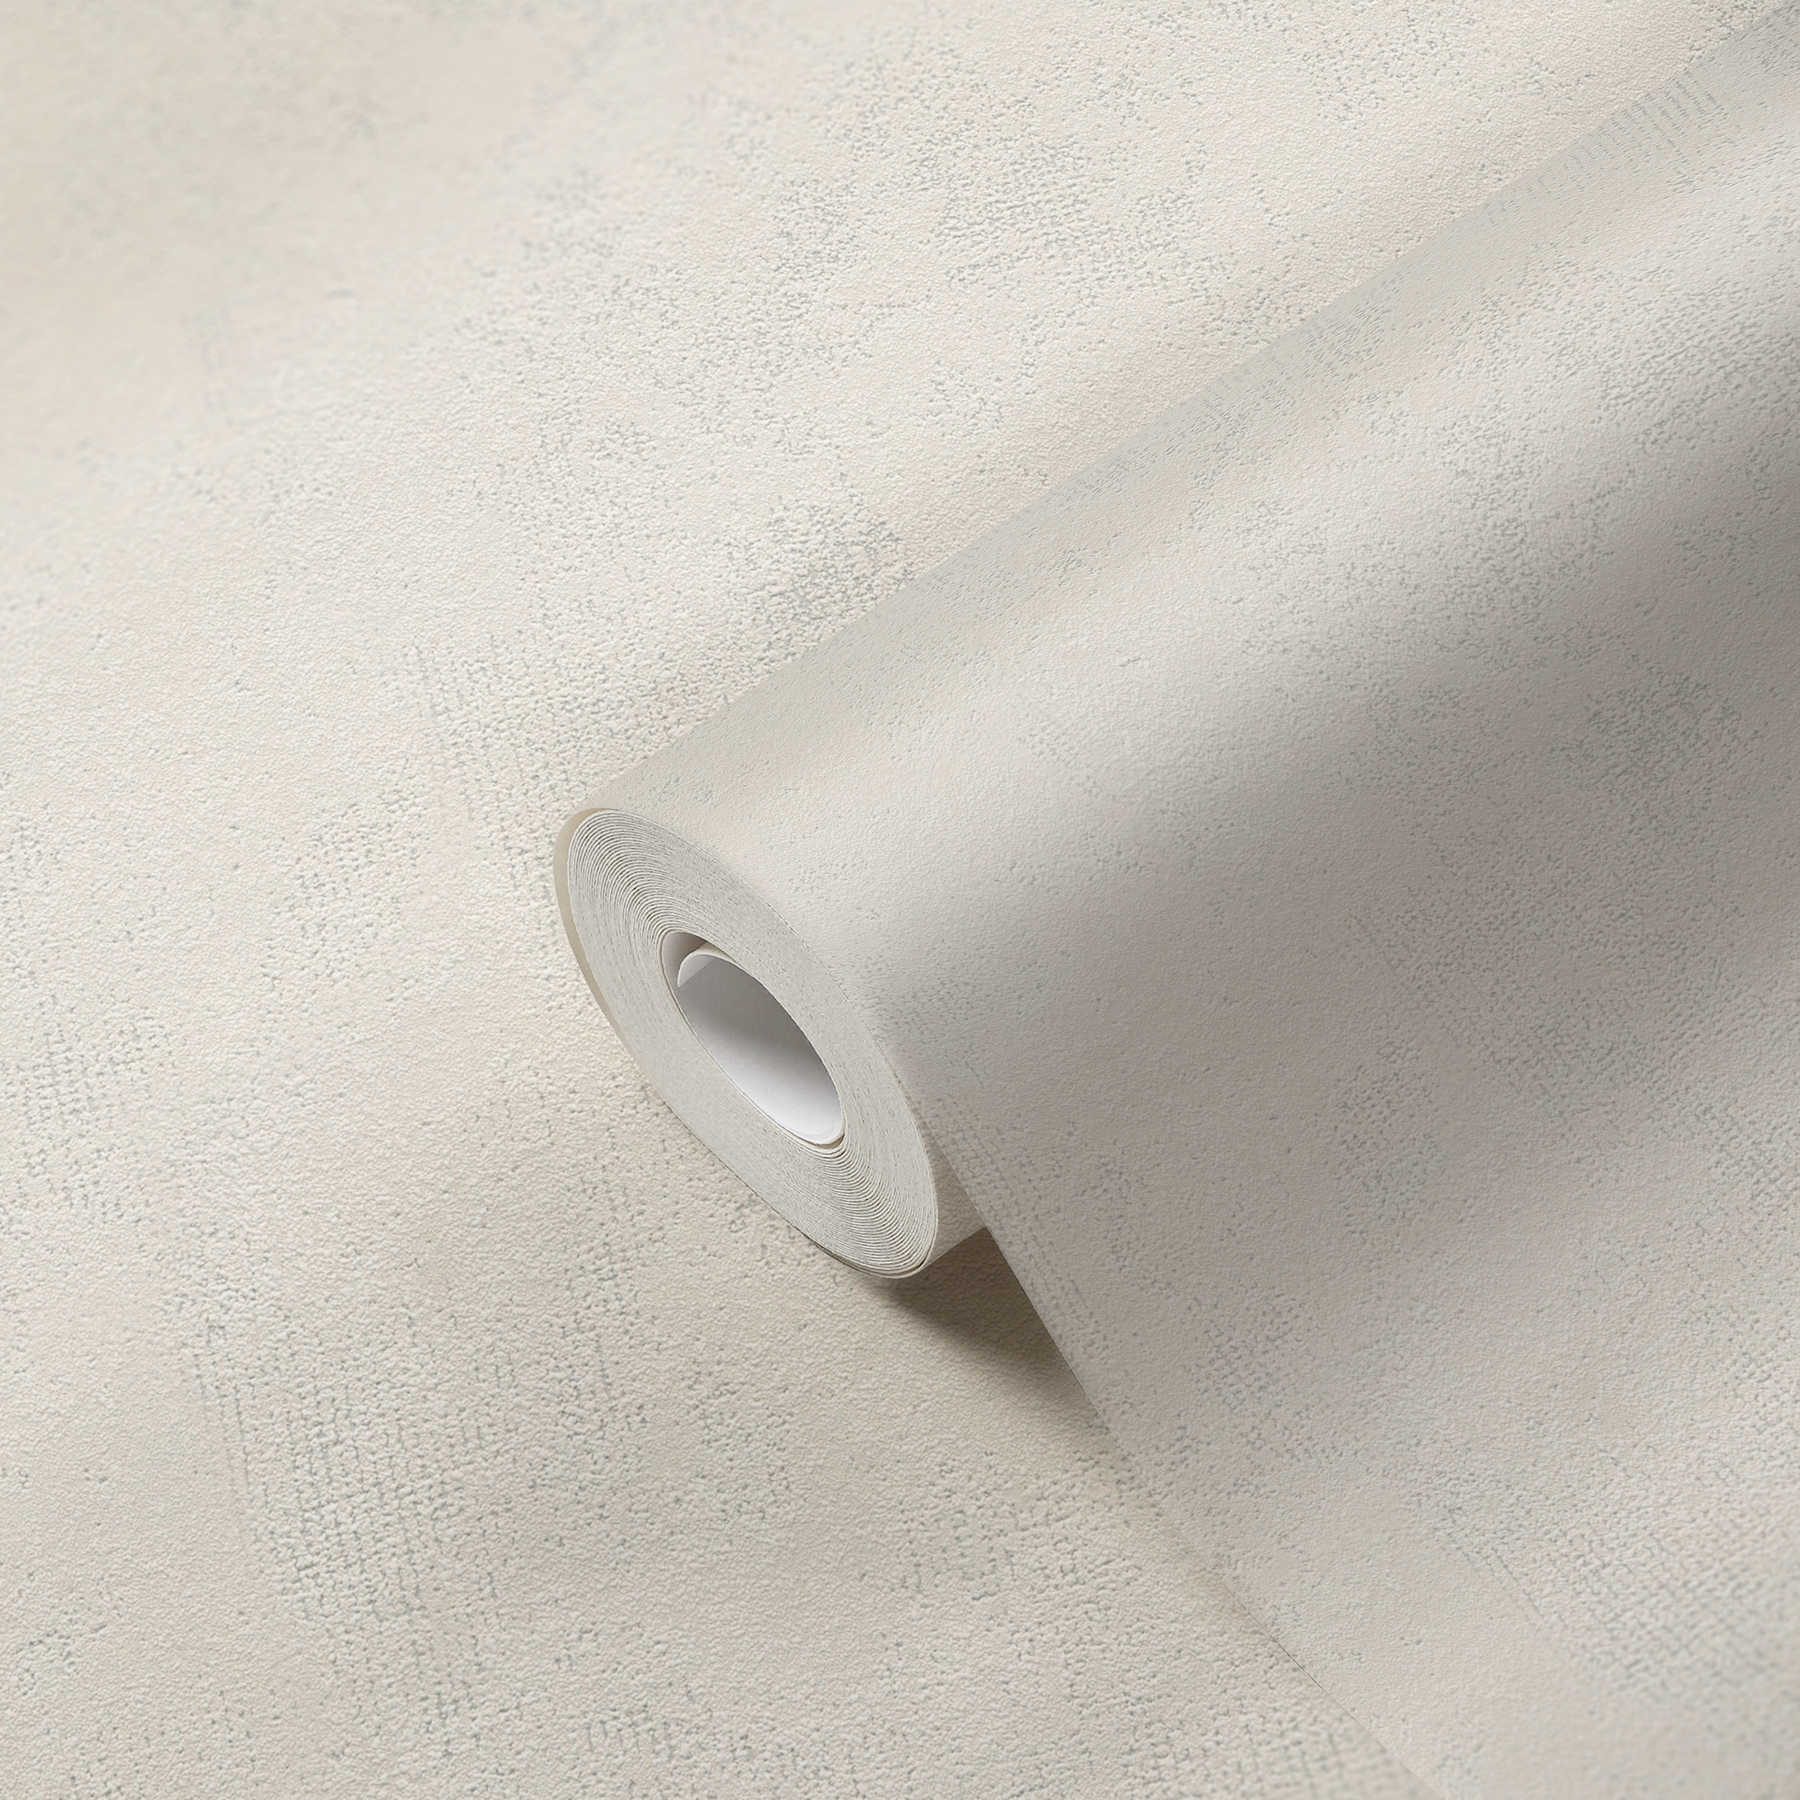             Carta da parati effetto used in tessuto non tessuto con ottica in gesso con tratteggio a colori - crema
        